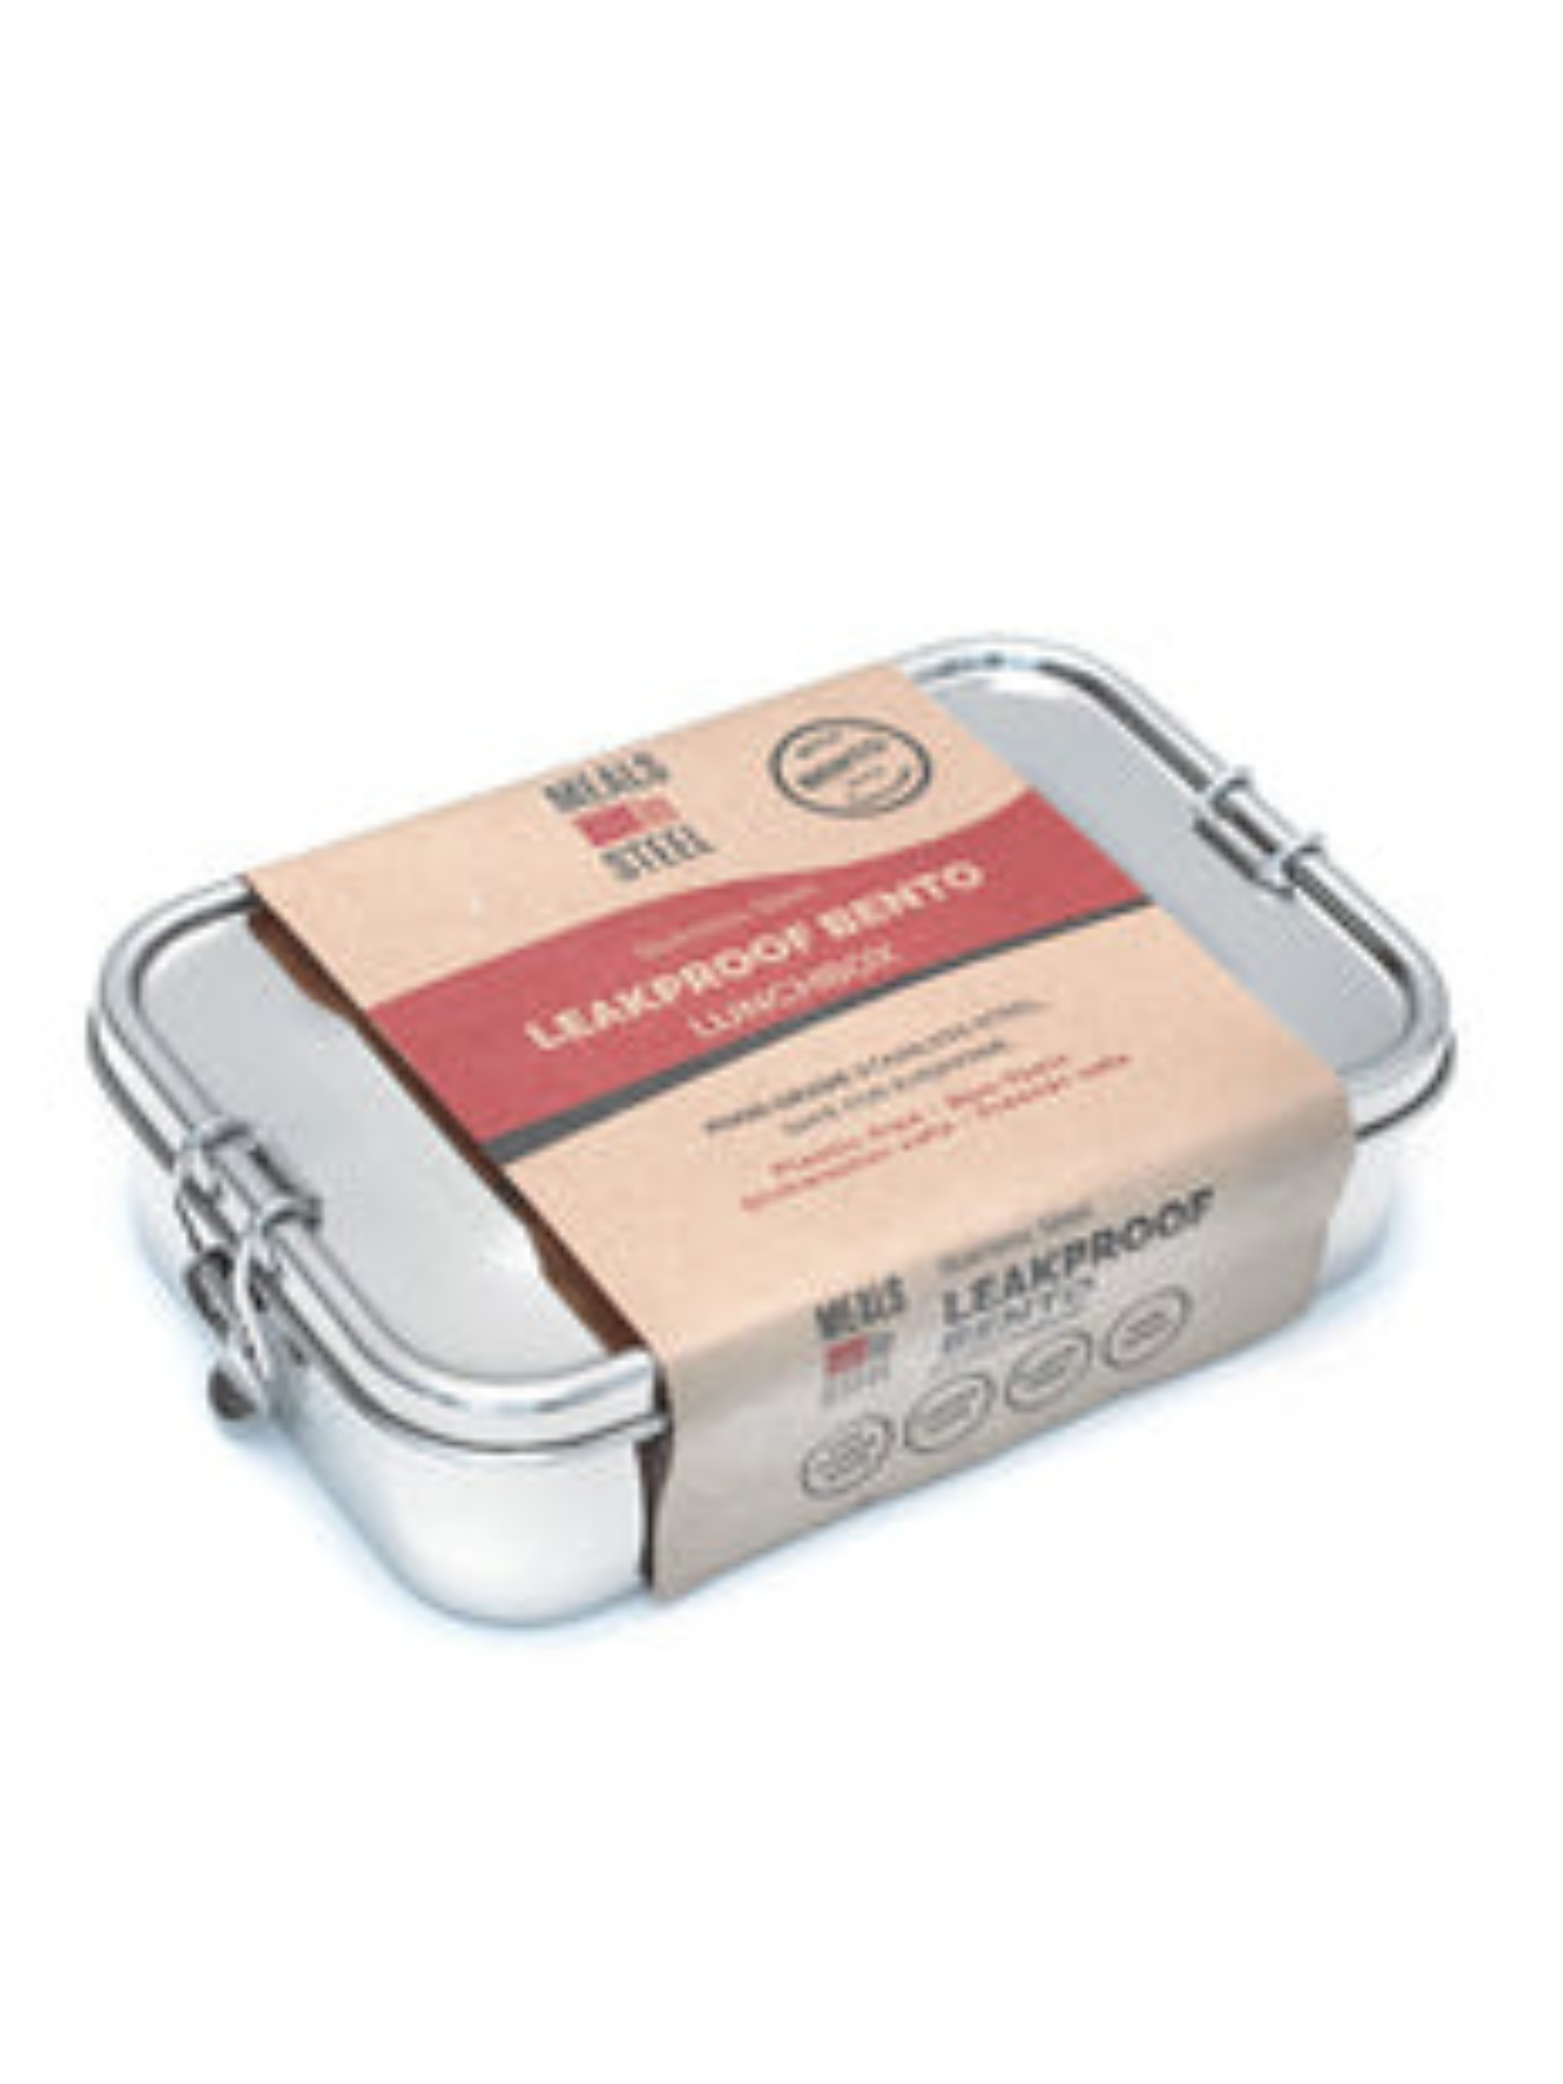 Meals in Steel Leakproof Bento Lunchbox